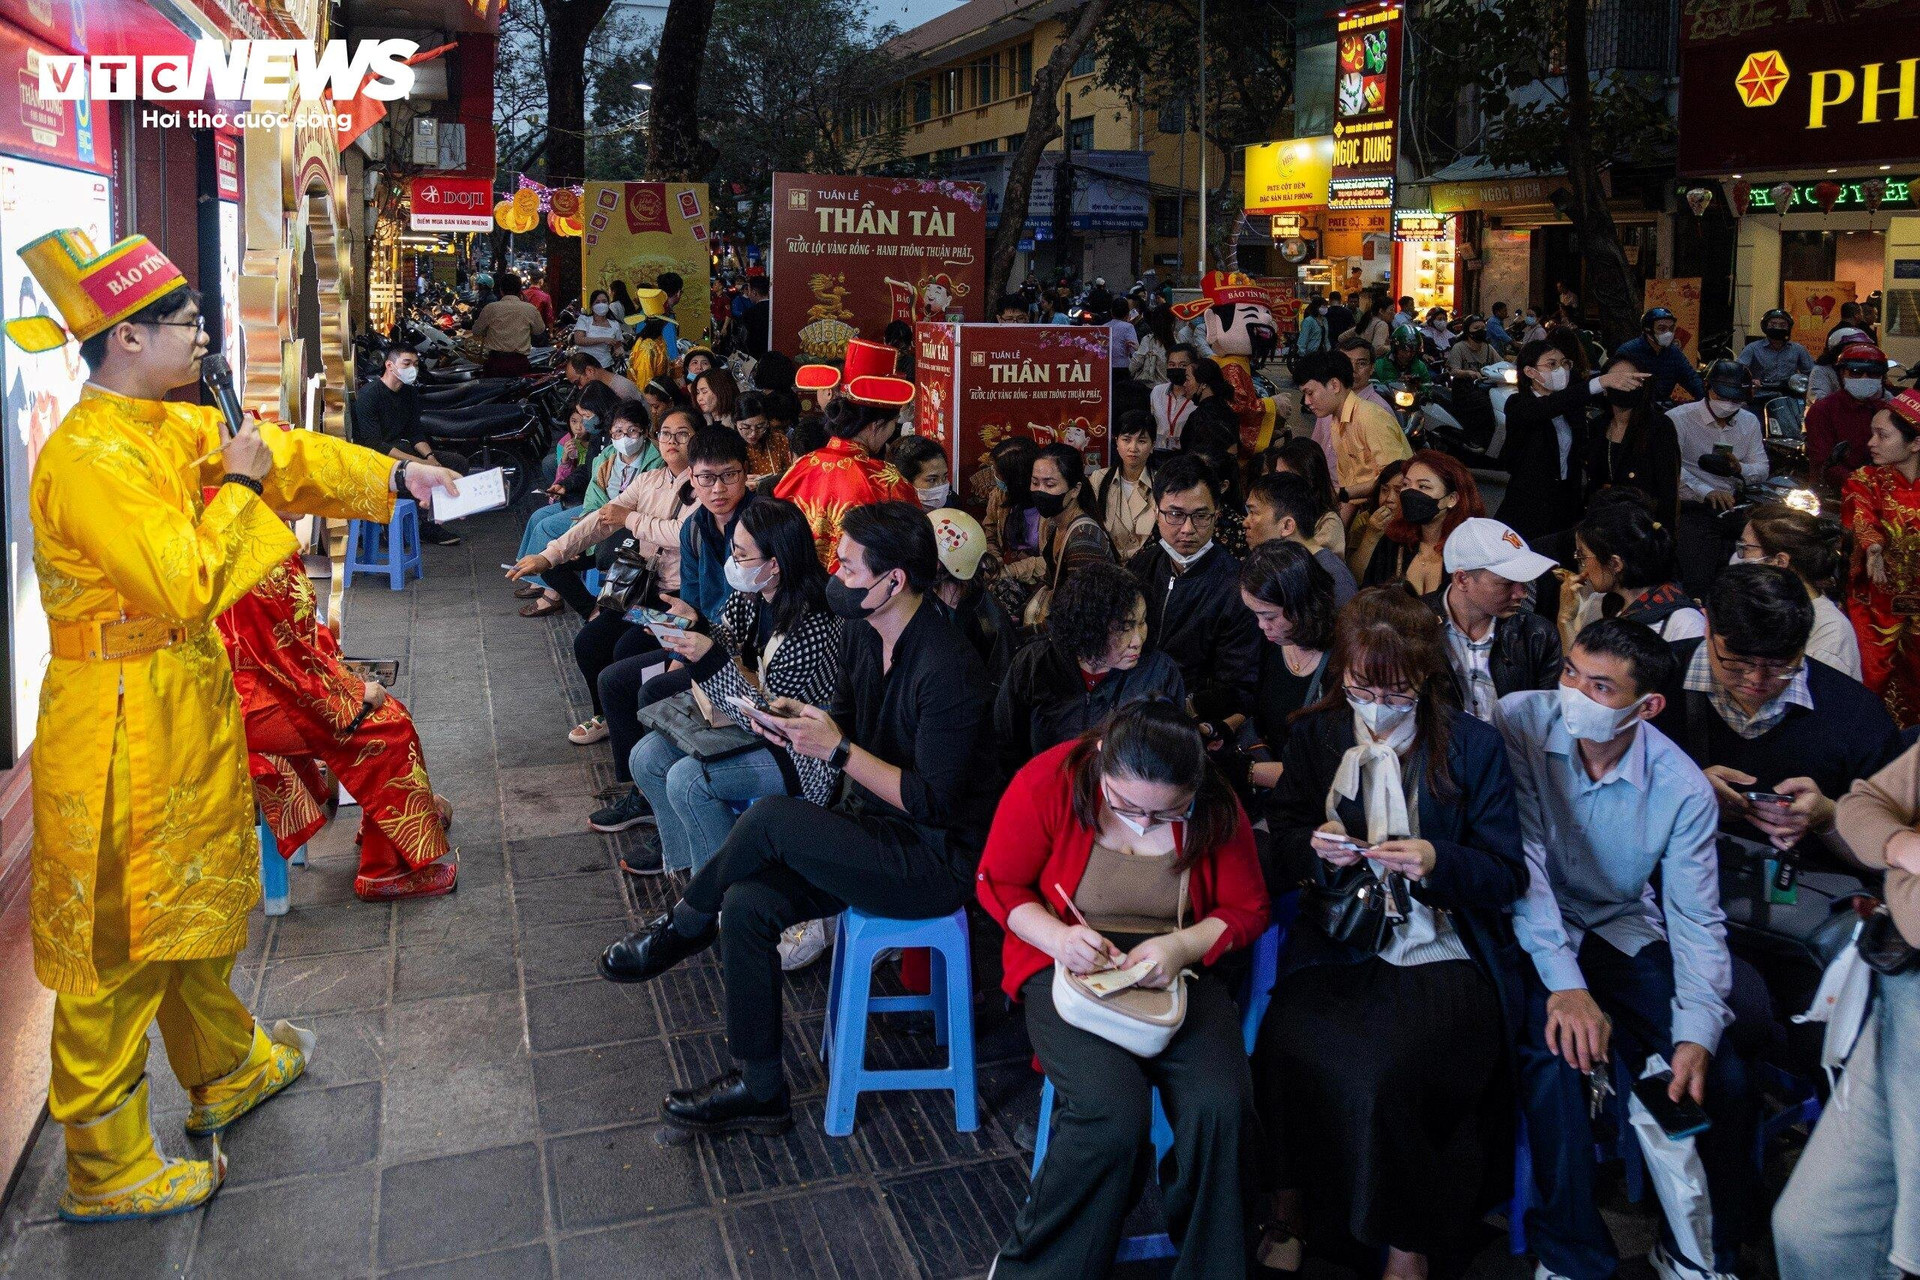 Đến khoảng 19h, khách đã ngồi kín toàn bộ số ghế trước cửa hàng Bảo Tín Minh Châu để chờ đến lượt mua vàng do cửa hàng chật kín, không thể chen chân vào. Có nhiều khách phải đứng dưới lòng đường khi hết ghế.